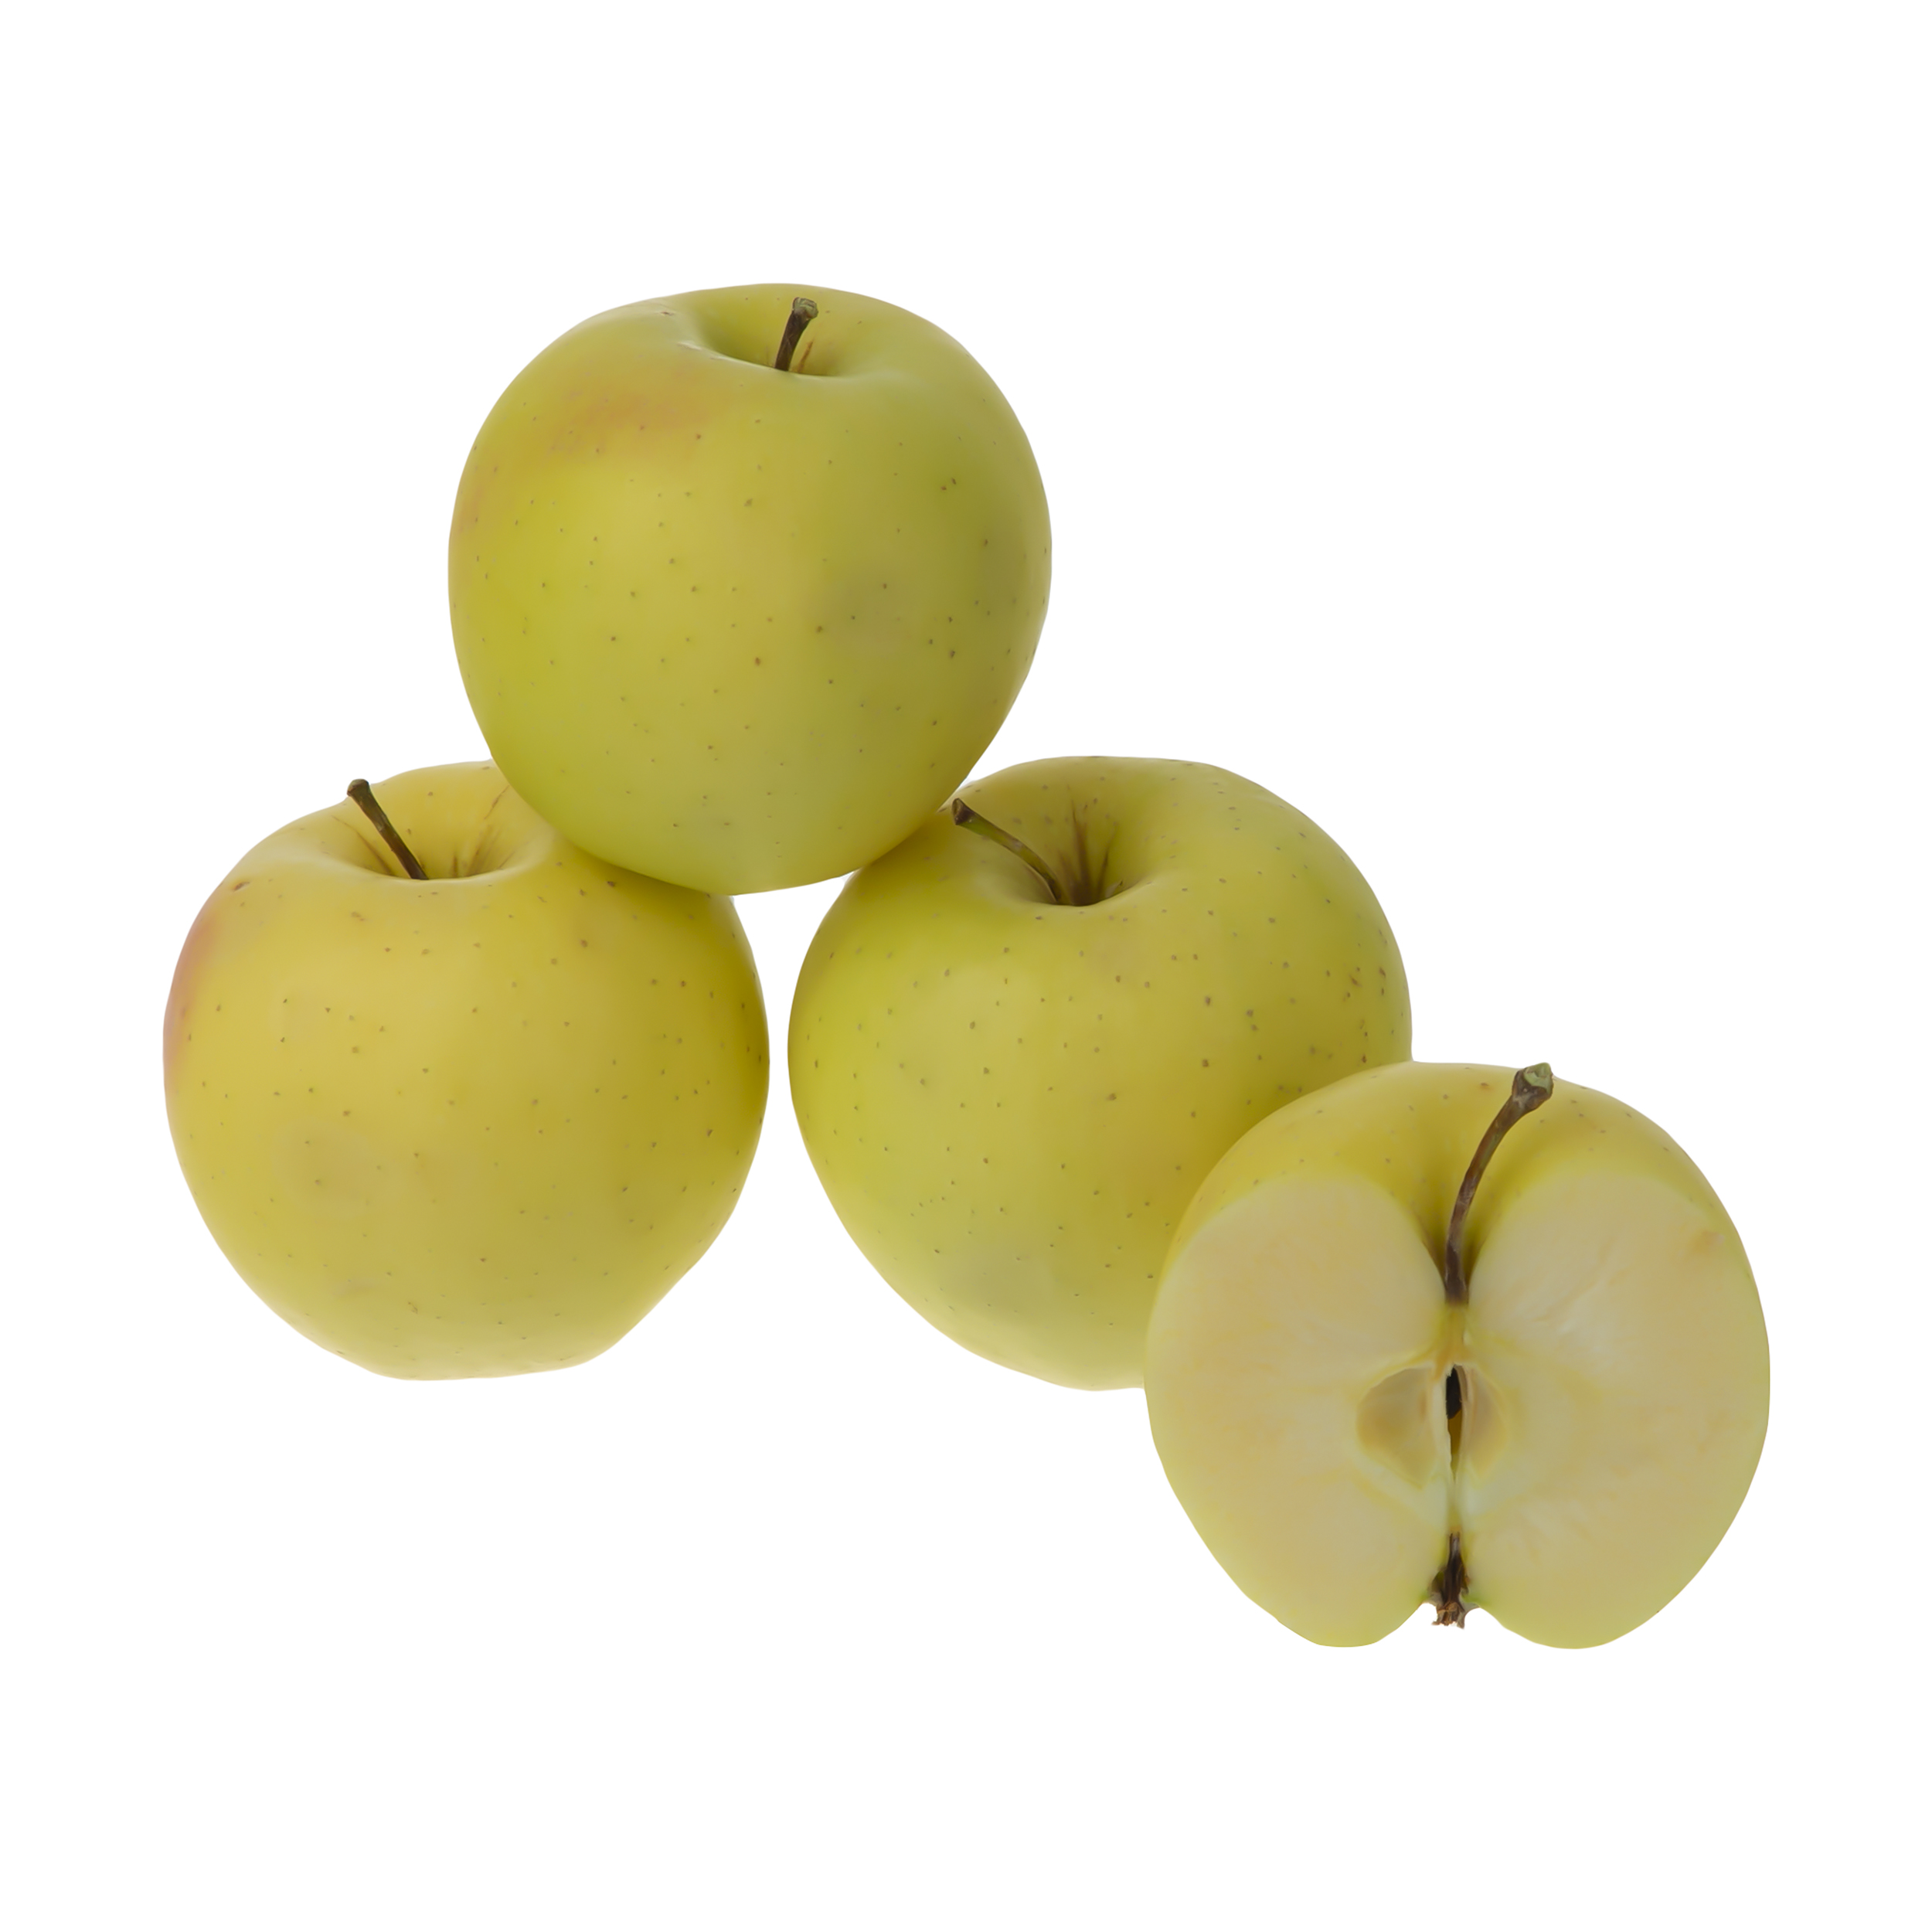 سیب زرد میوری - 1 کیلوگرم